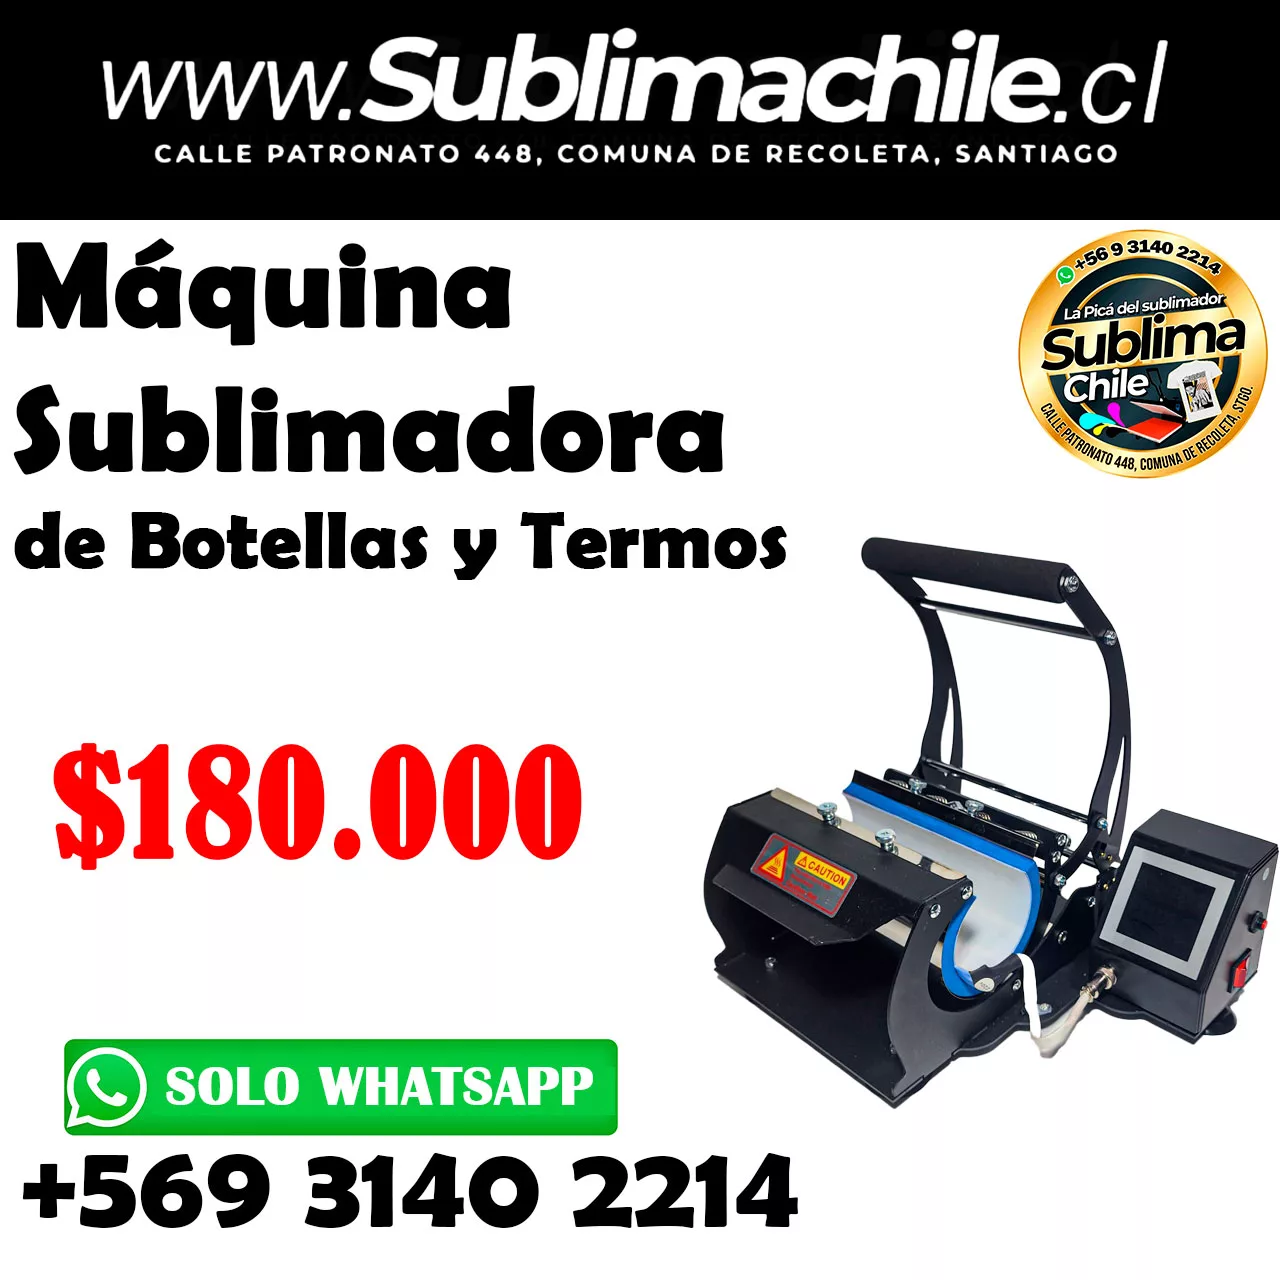 Máquina sublimadora de Botellas y Termos - Sublimachile - Santiago Chile